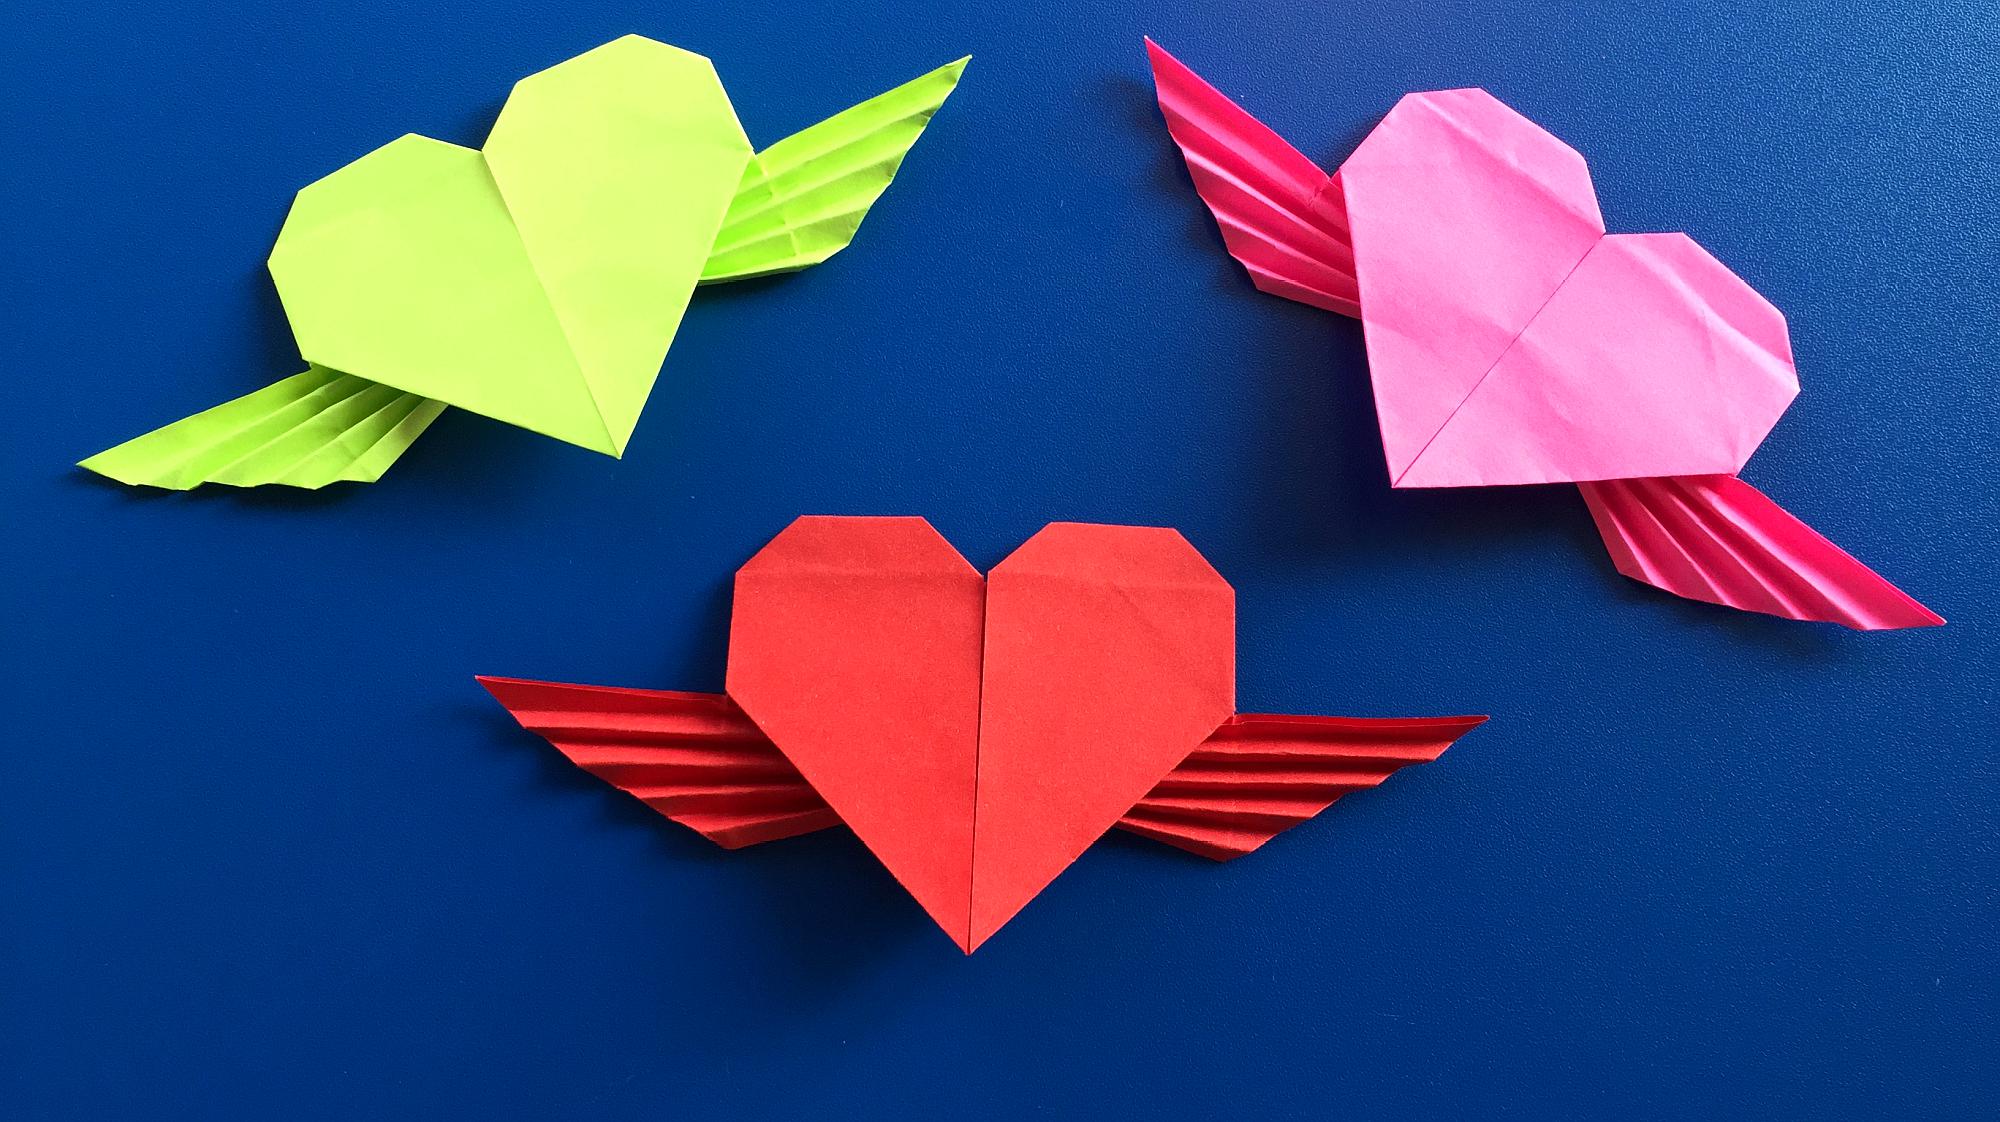 带翅膀的爱心折纸,2分钟学会,非常漂亮的爱心折纸,女孩都喜欢